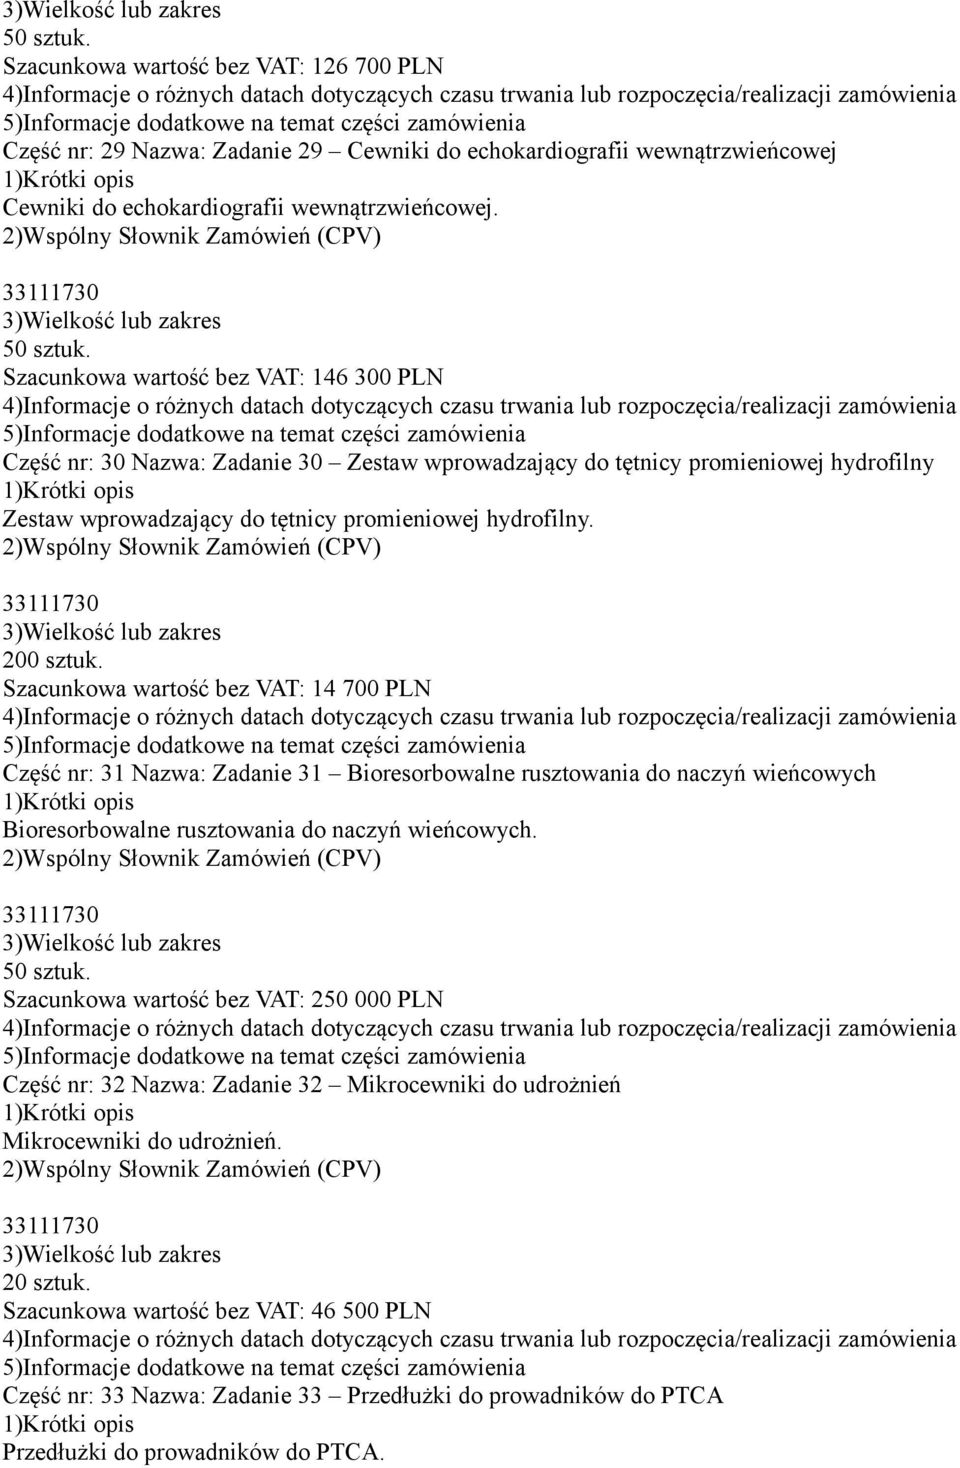 Szacunkowa wartość bez VAT: 14 700 PLN Część nr: 31 Nazwa: Zadanie 31 Bioresorbowalne rusztowania do naczyń wieńcowych Bioresorbowalne rusztowania do naczyń wieńcowych. 50 sztuk.